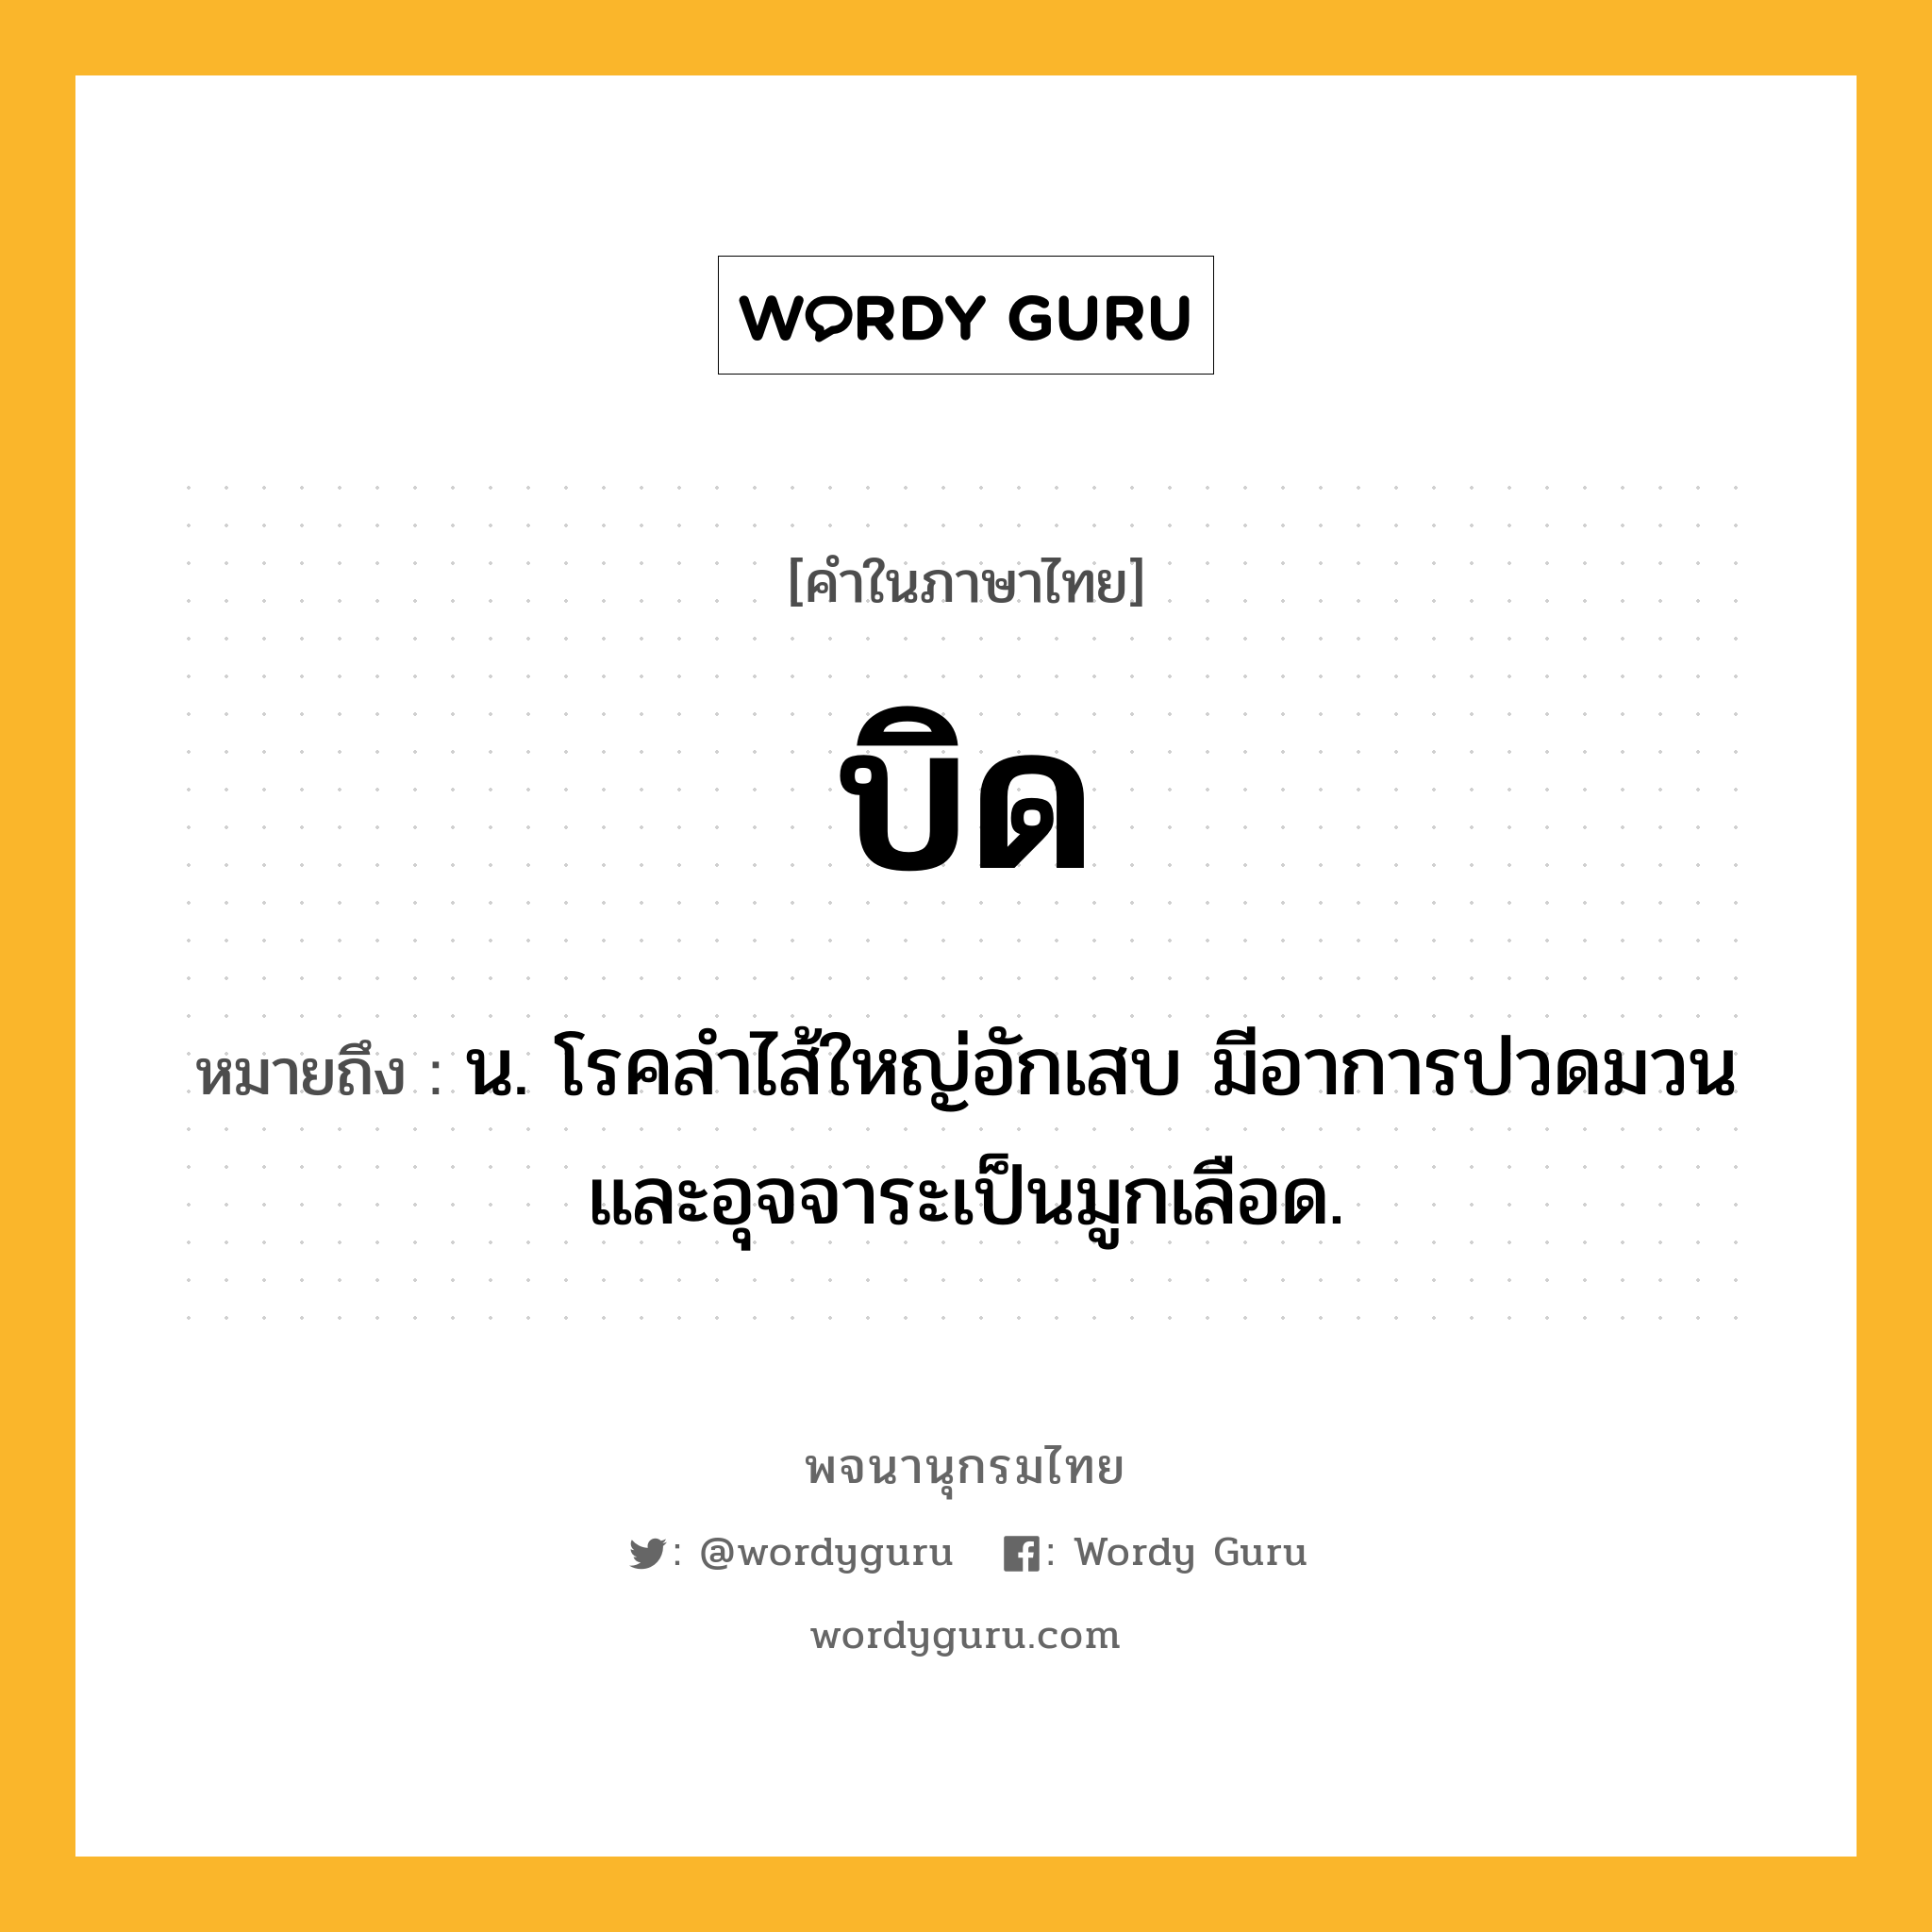 บิด ความหมาย หมายถึงอะไร?, คำในภาษาไทย บิด หมายถึง น. โรคลําไส้ใหญ่อักเสบ มีอาการปวดมวนและอุจจาระเป็นมูกเลือด.